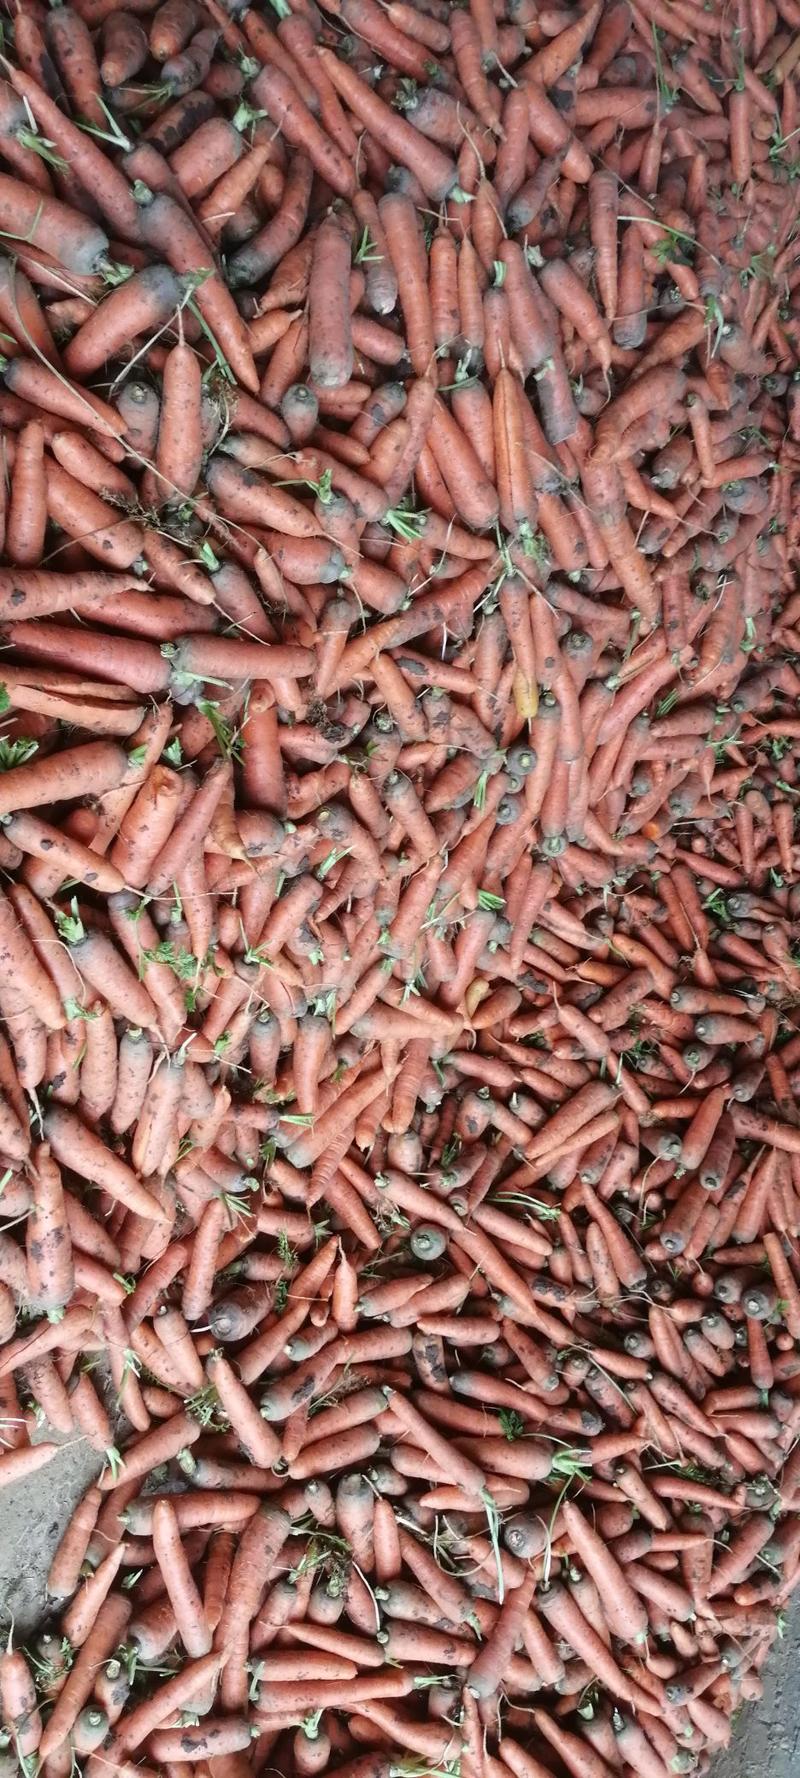 胡萝卜精品中条大量供应全国发货保证质量货源稳定持续年底